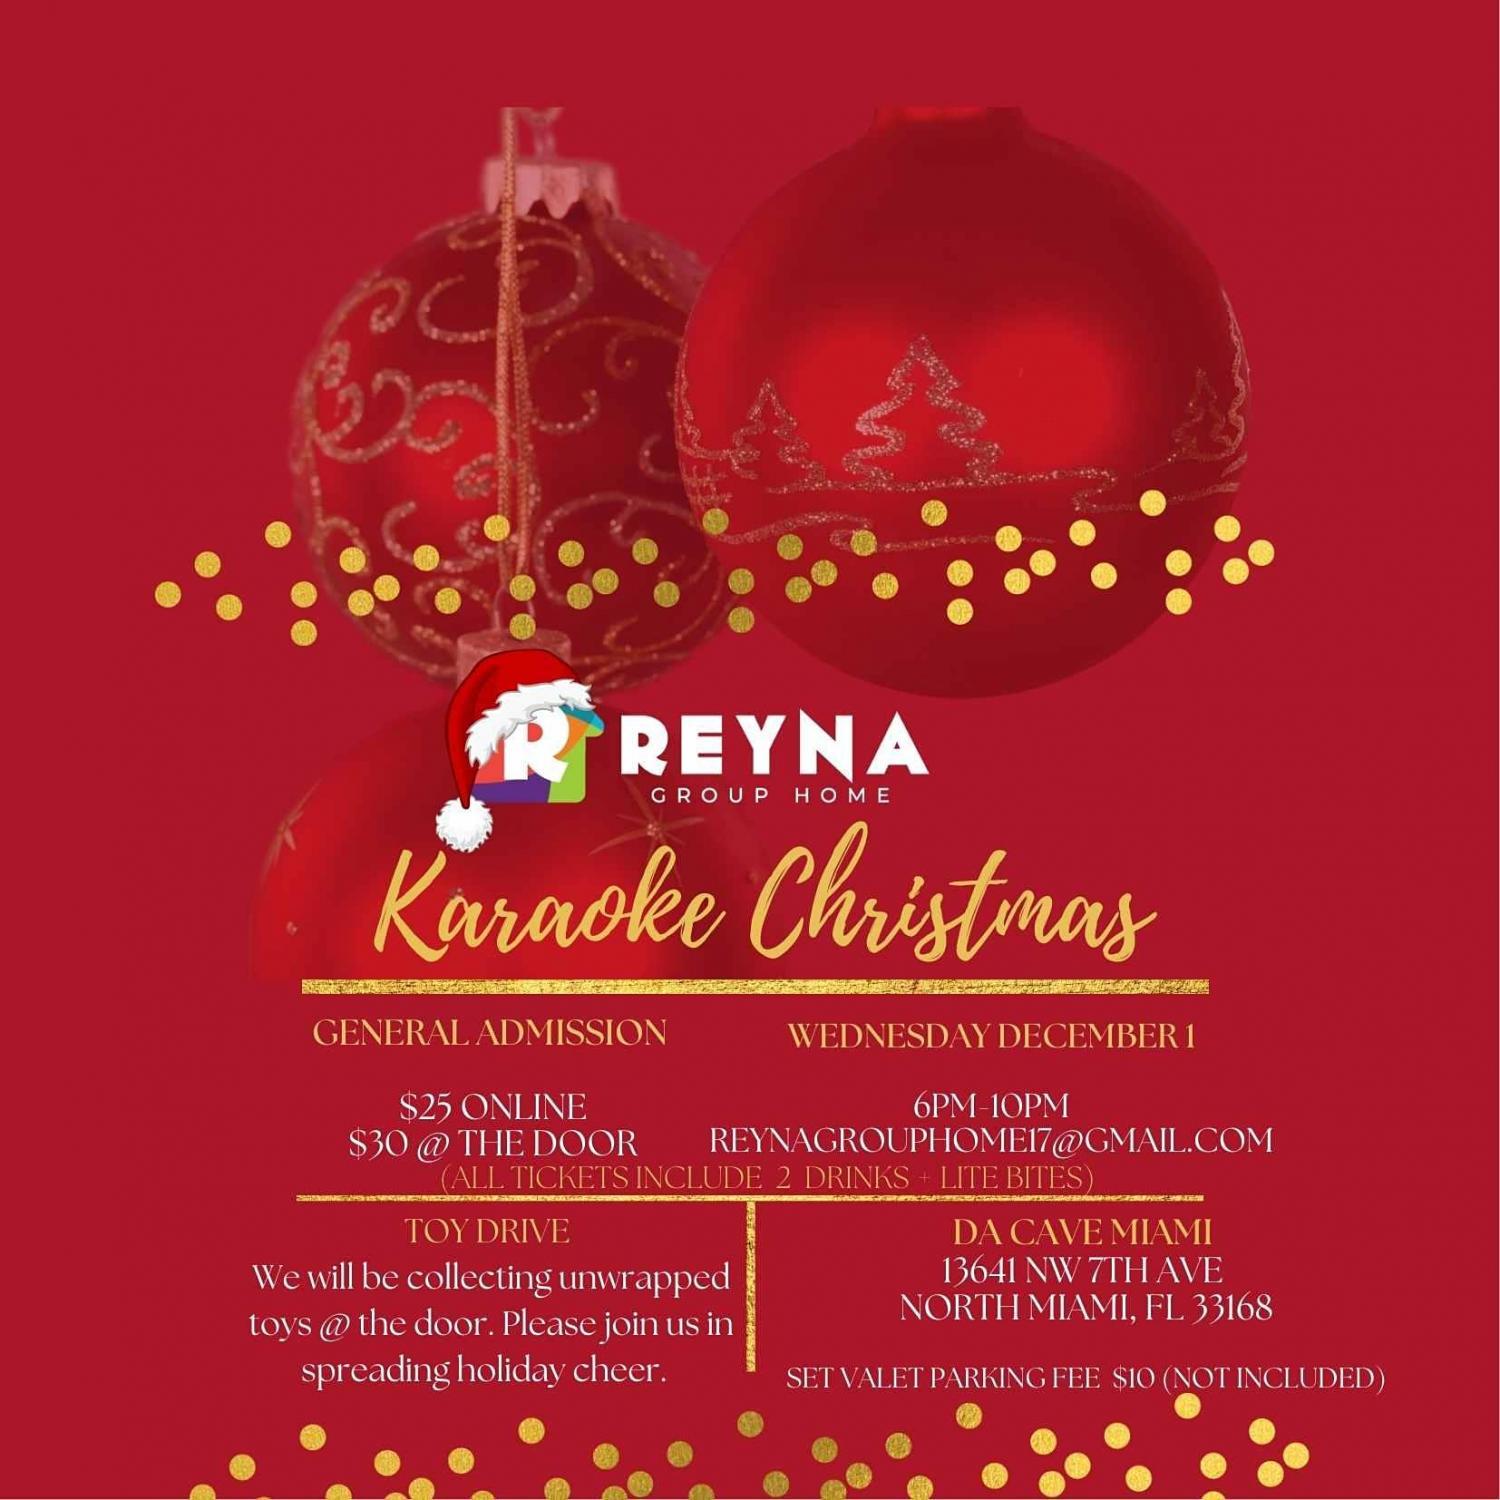 Karaoke Christmas with REYNA Group Home!